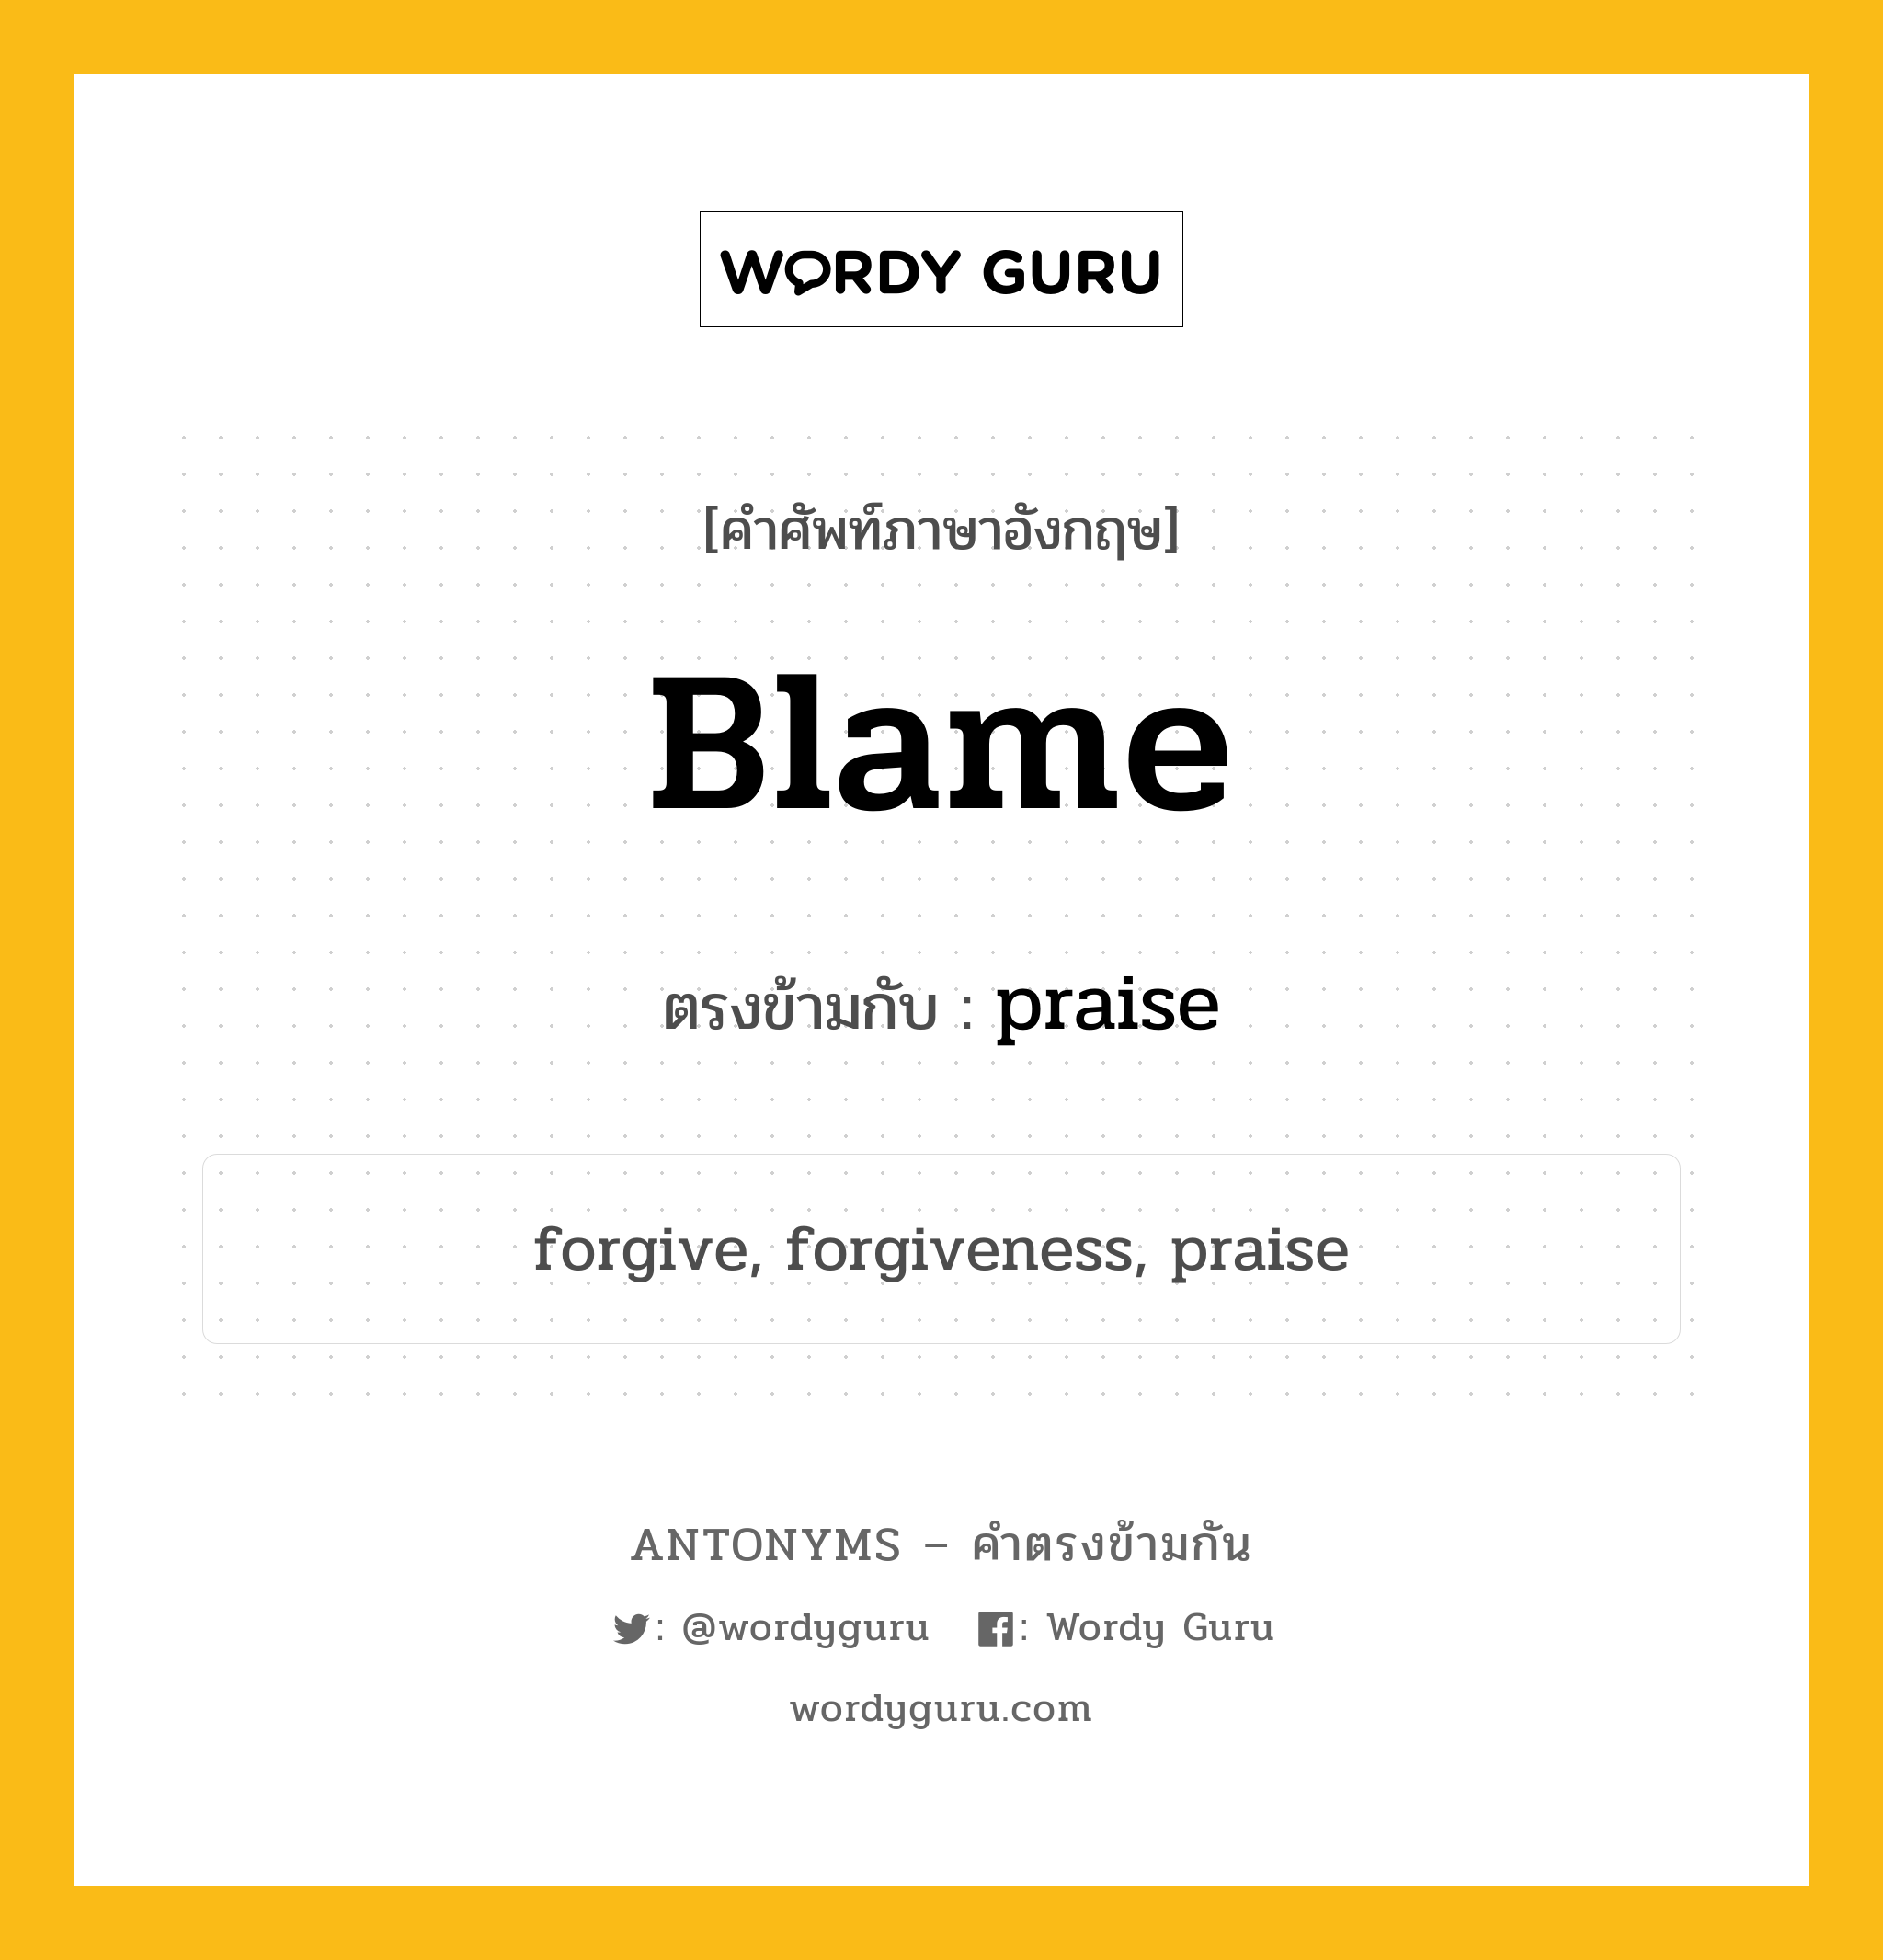 blame เป็นคำตรงข้ามกับคำไหนบ้าง?, คำศัพท์ภาษาอังกฤษที่มีความหมายตรงข้ามกัน blame ตรงข้ามกับ praise หมวด praise